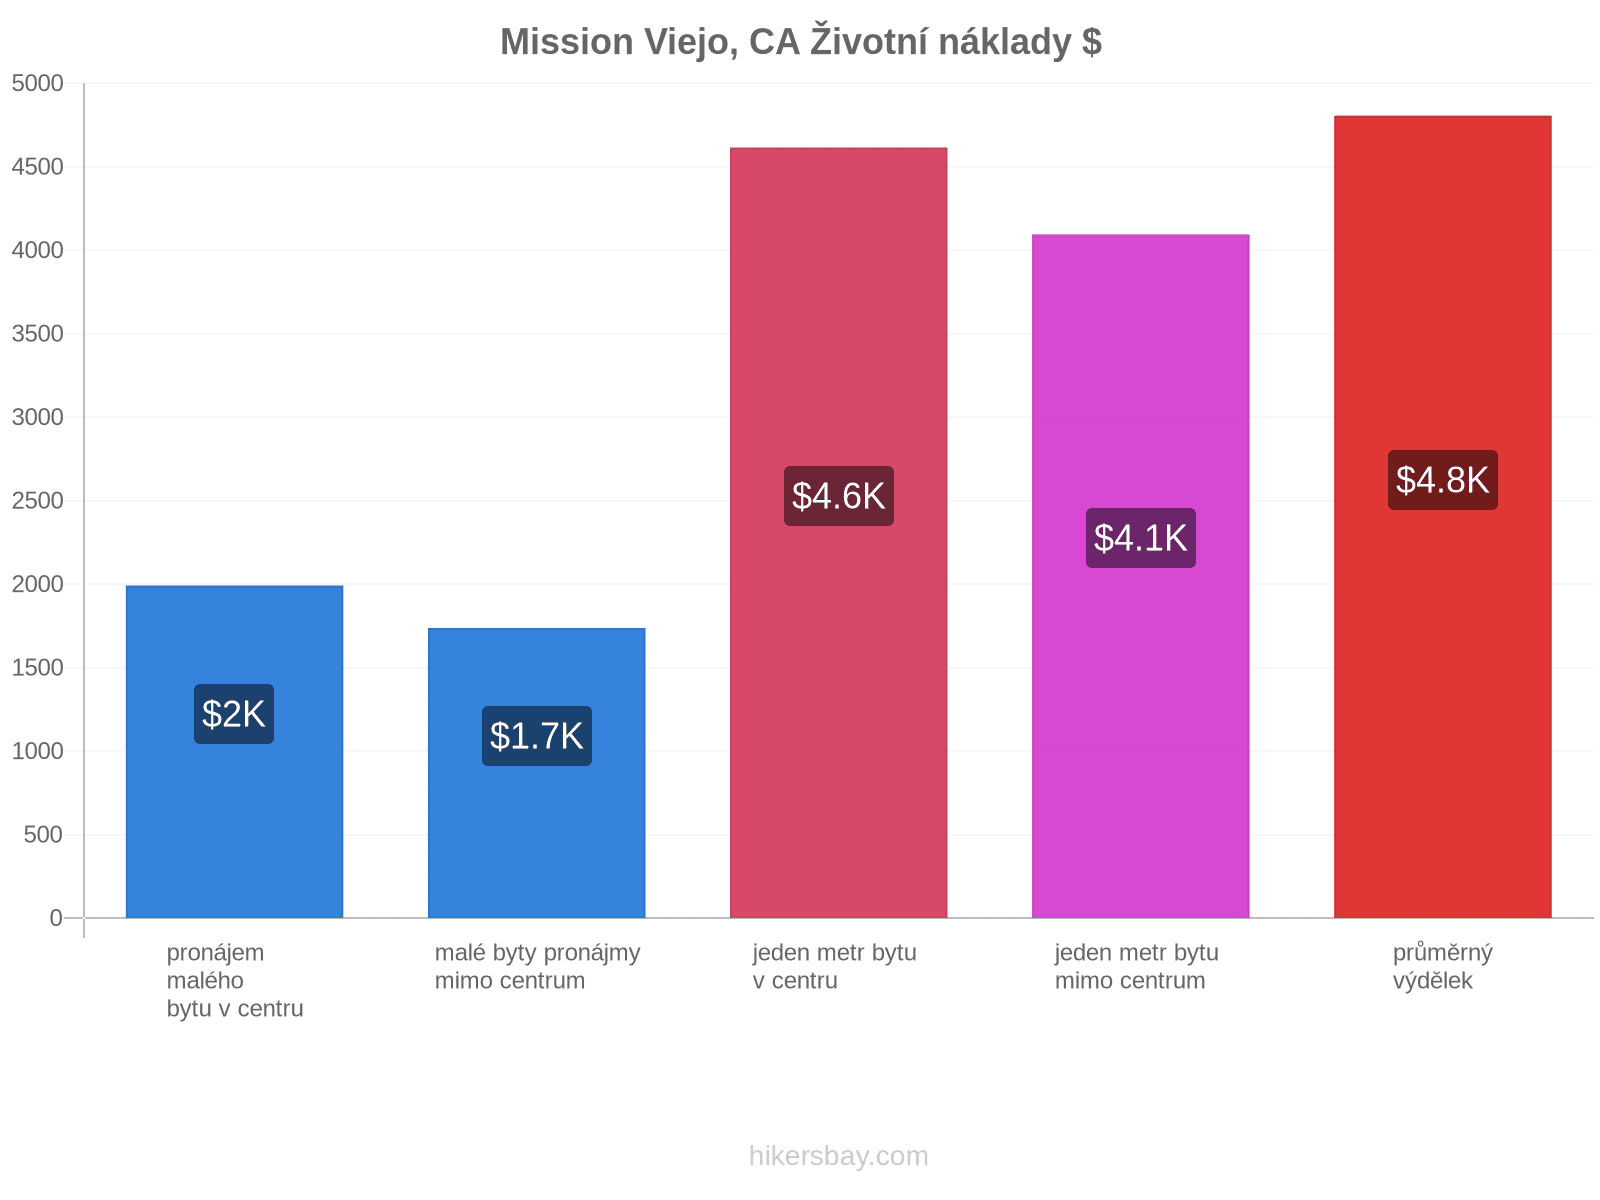 Mission Viejo, CA životní náklady hikersbay.com